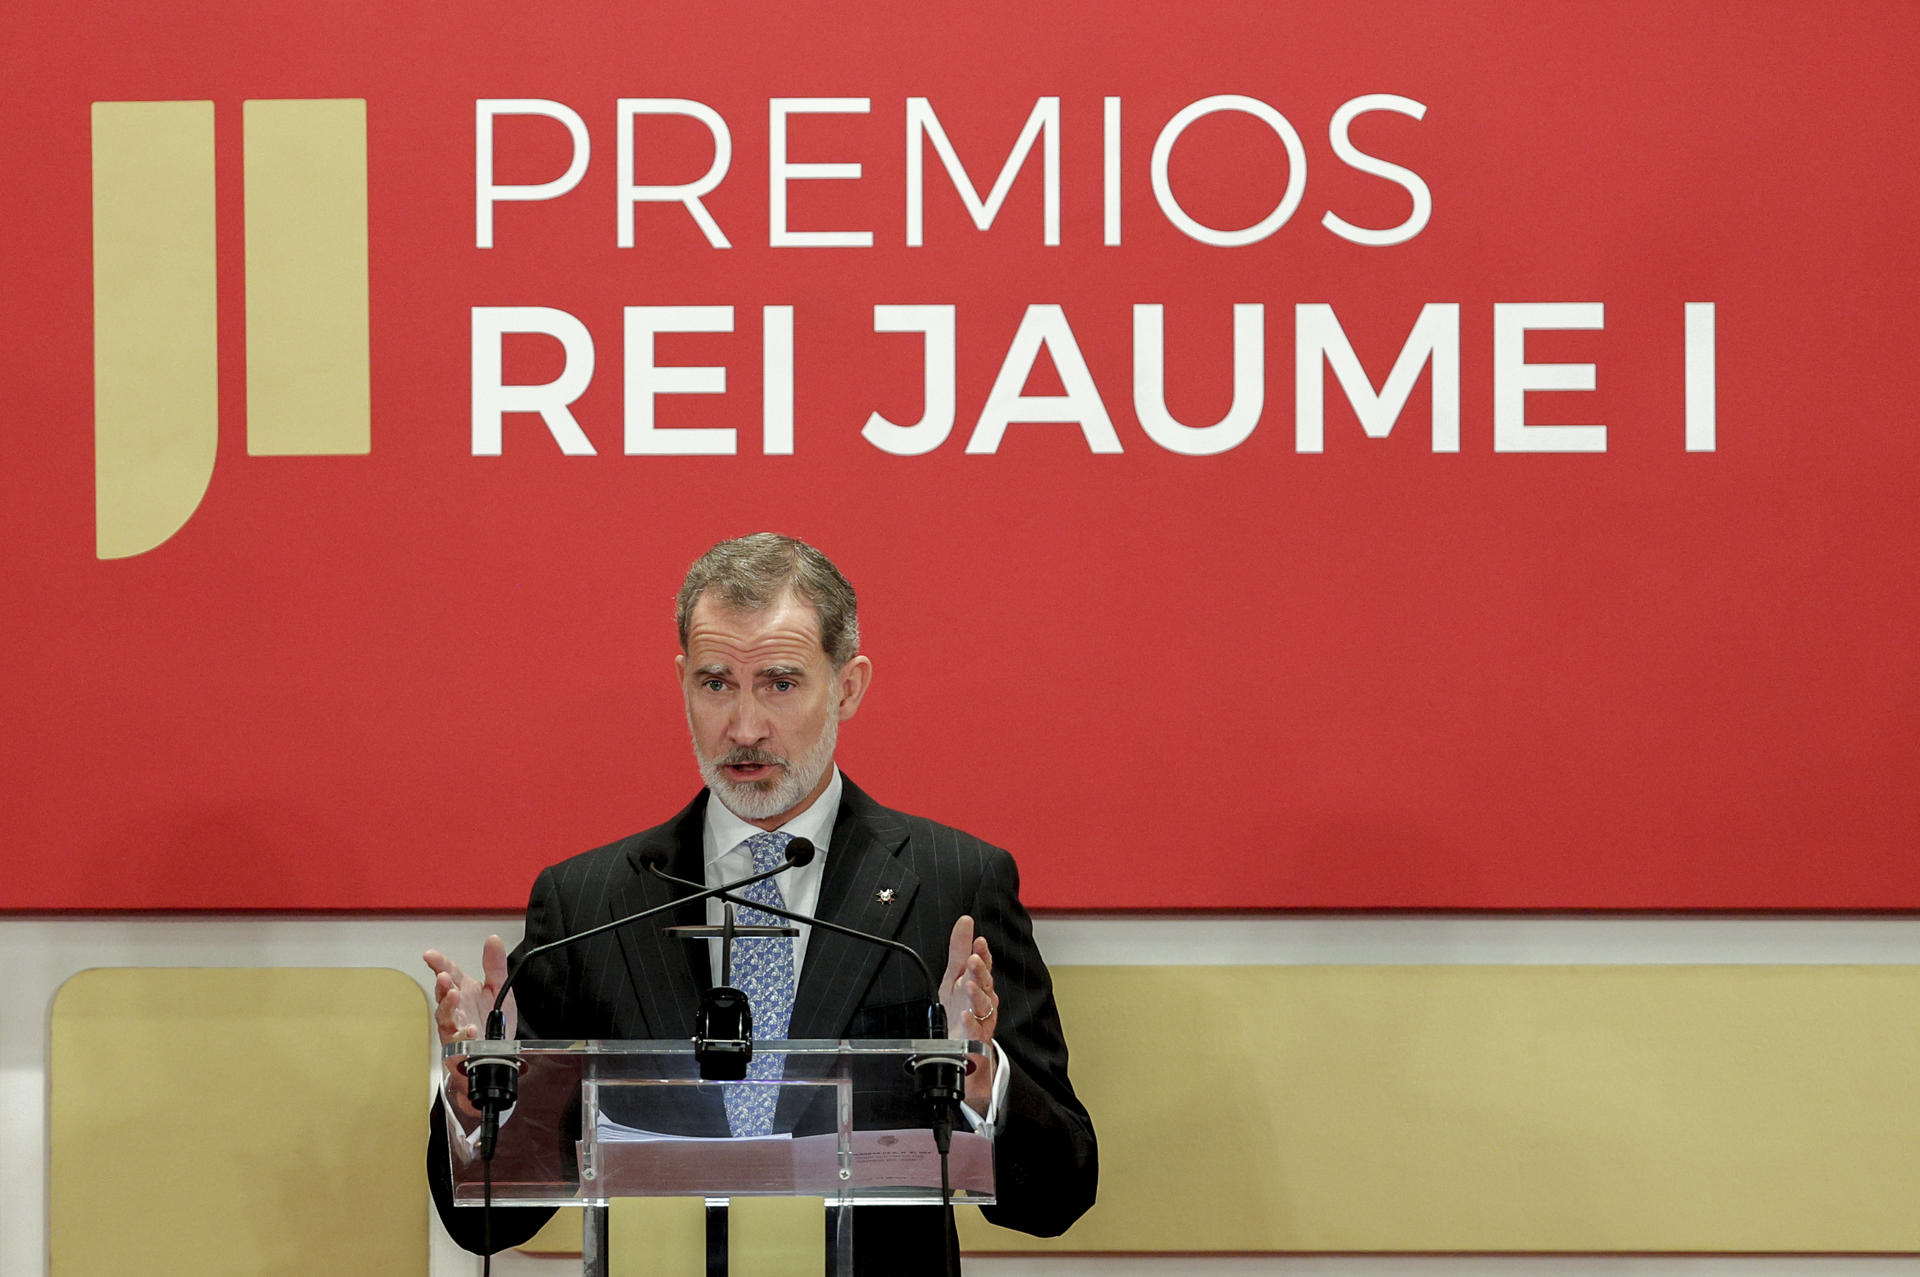 El rey Felipe VI durante su intervención en el acto de entrega de los premios Jaume I, en la Lonja de Valencia. EFE/ Manuel Bruque